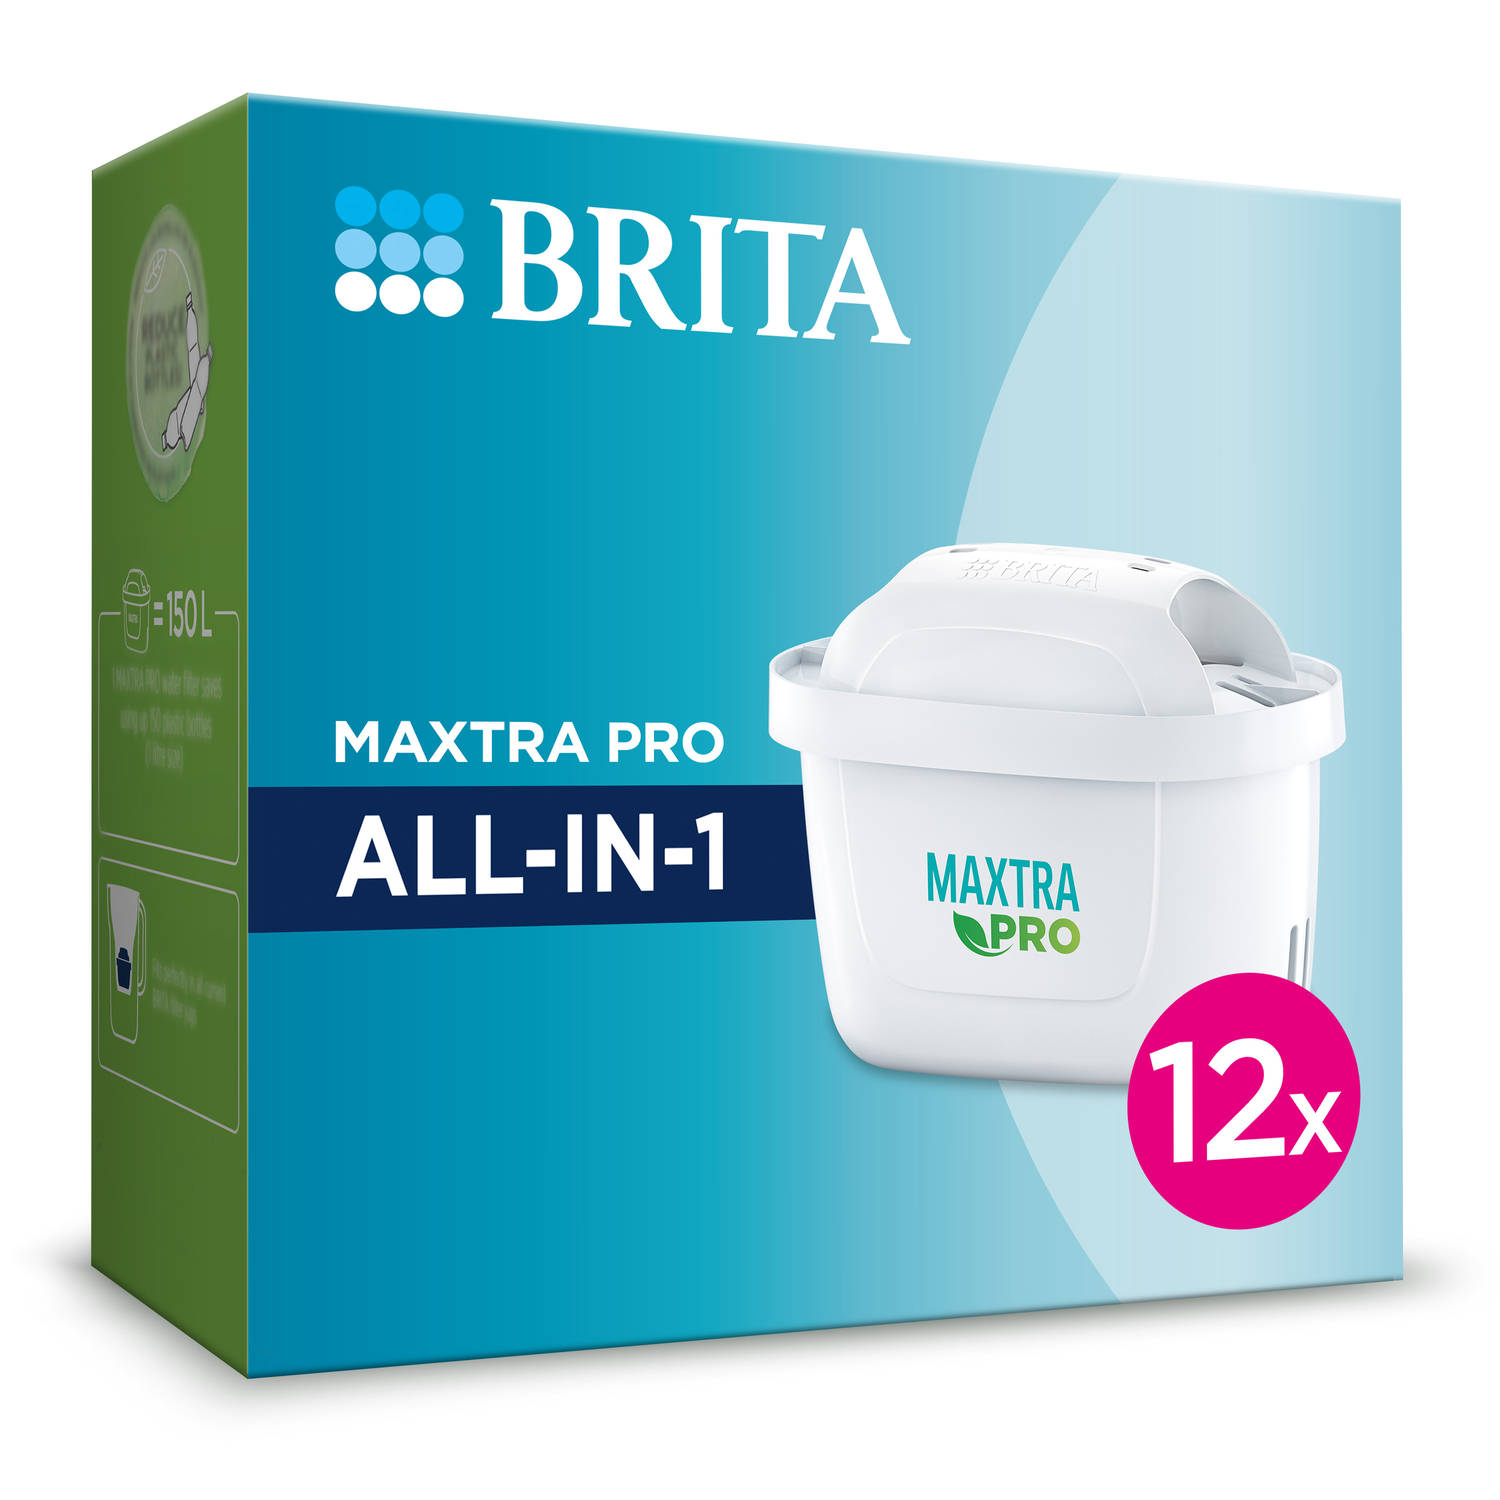 BRITA filterpatronen - Waterfilterpatronen - MAXTRA PRO ALL-IN-1 - 12-Pack - Voordeelverpakking